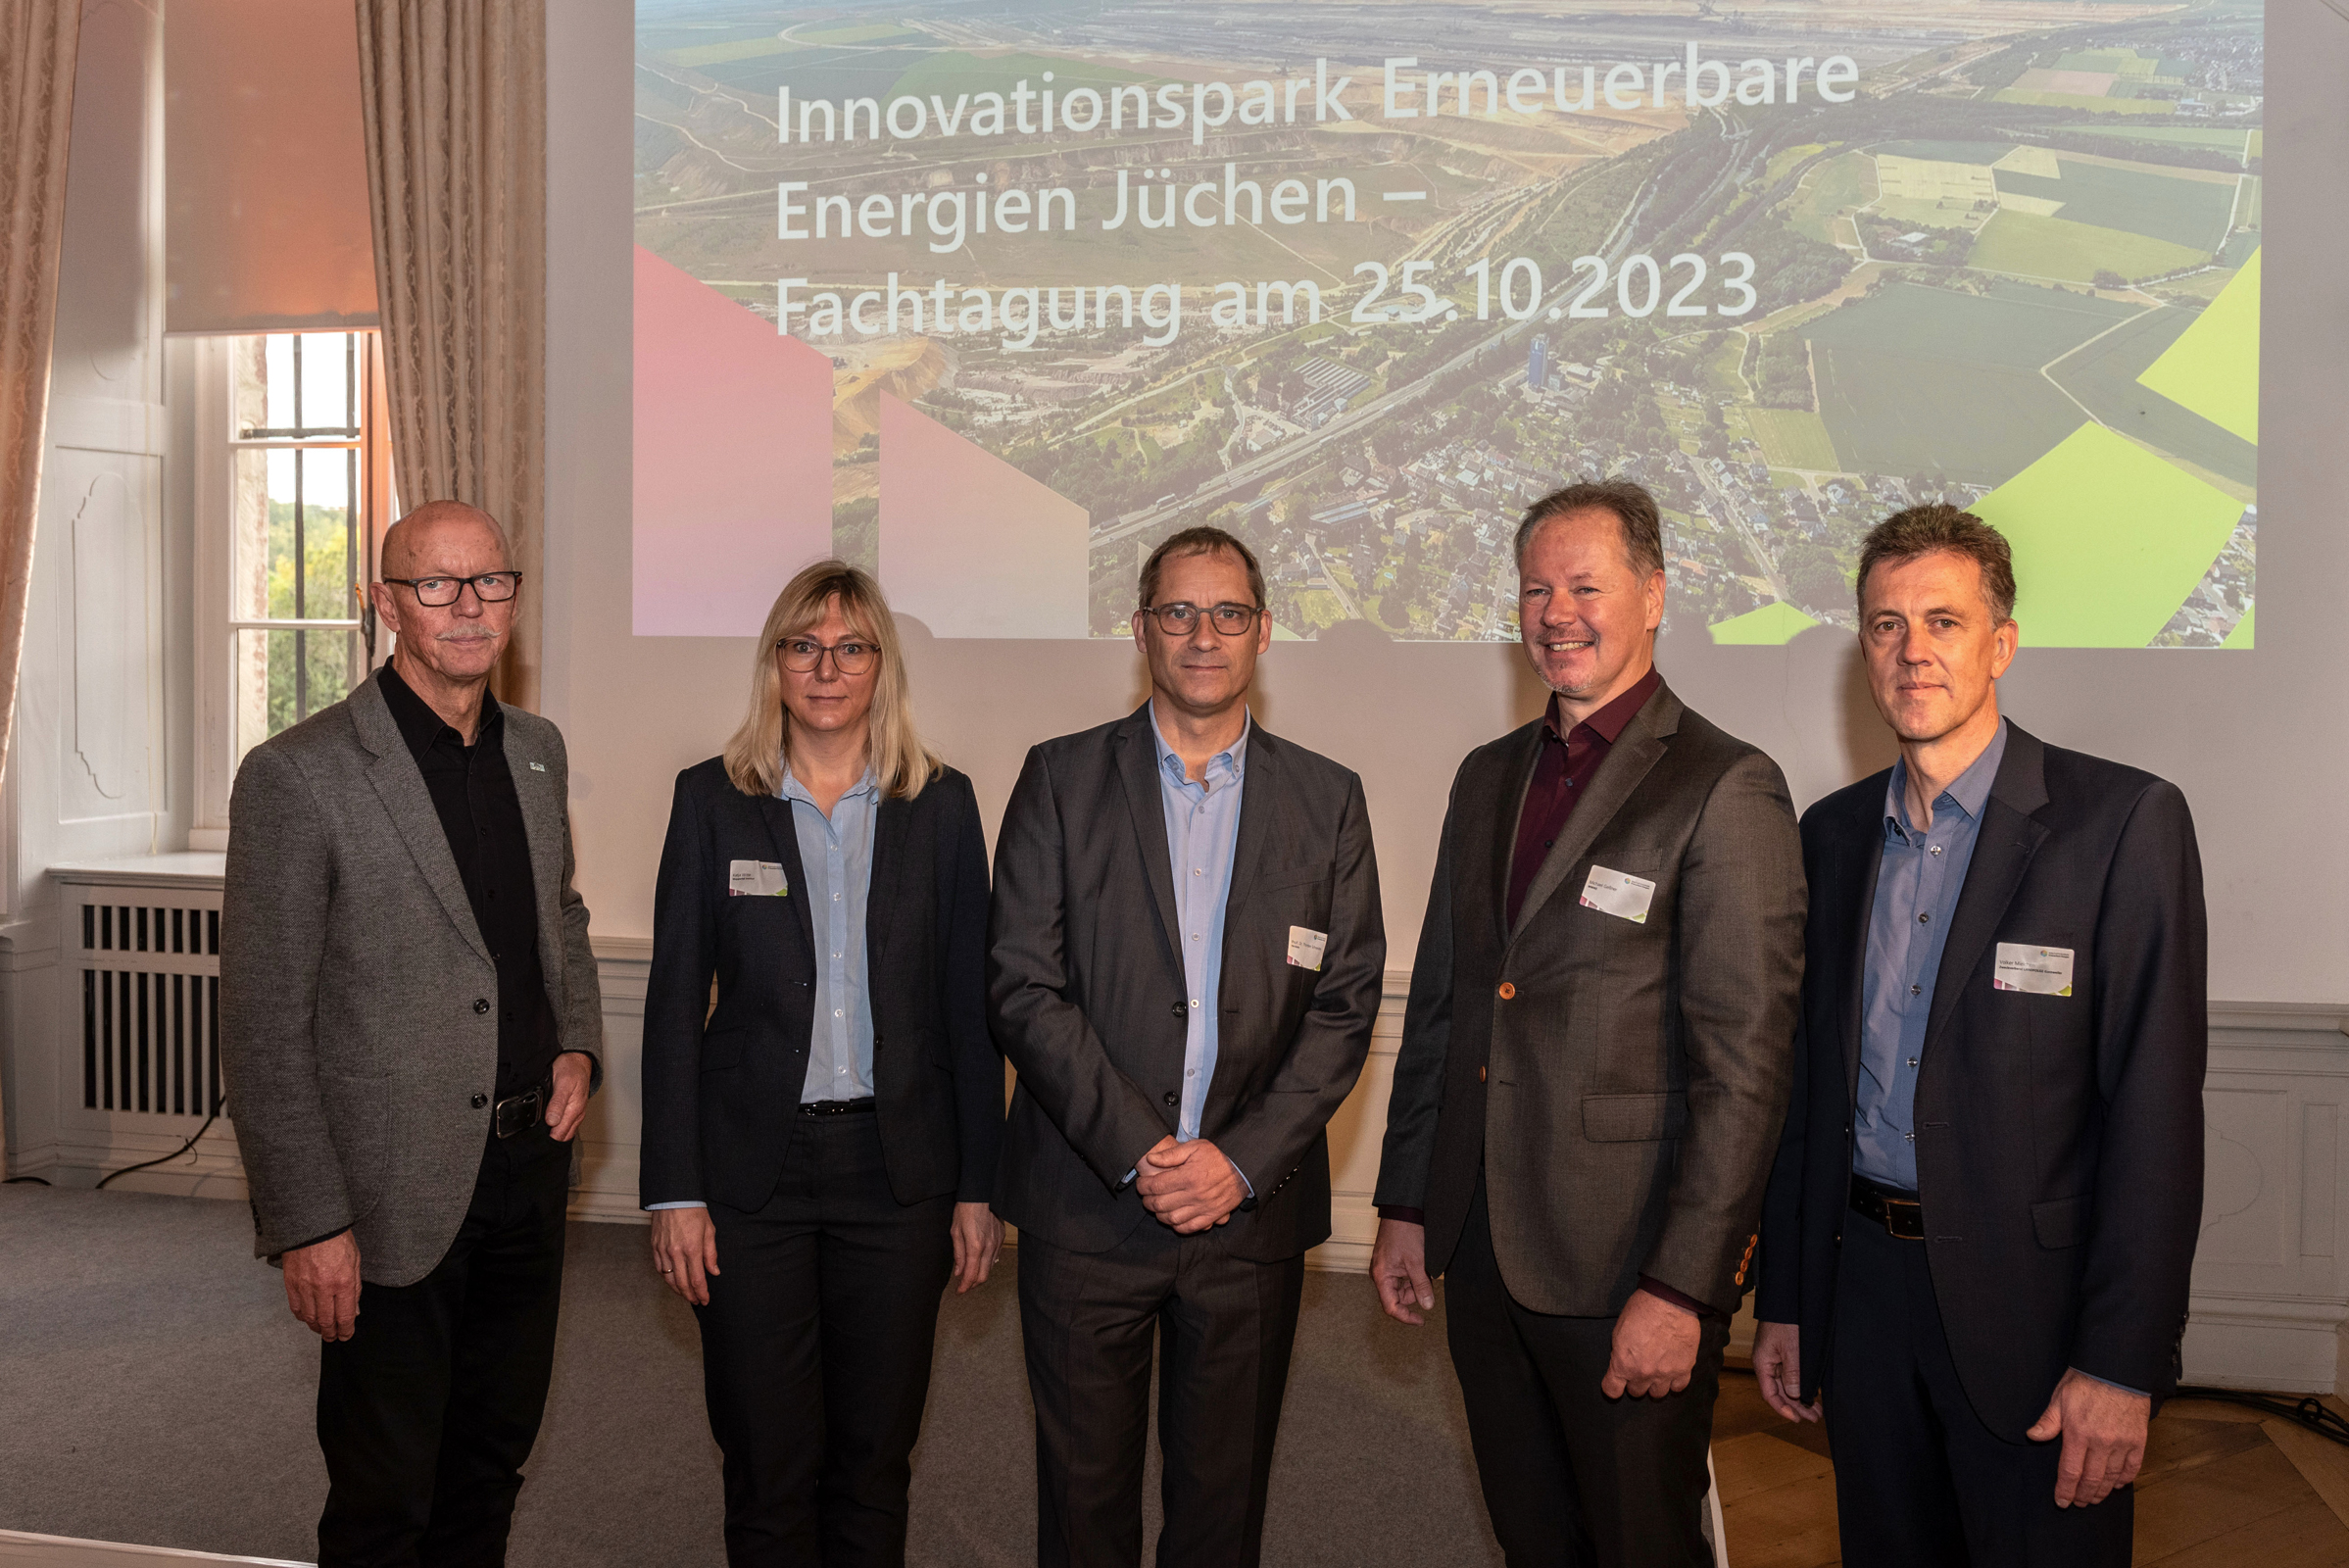 Fachtagung Innovationspark Erneuerbare Energien:  Experten diskutieren über Energieprojekt im Rheinischen Revier